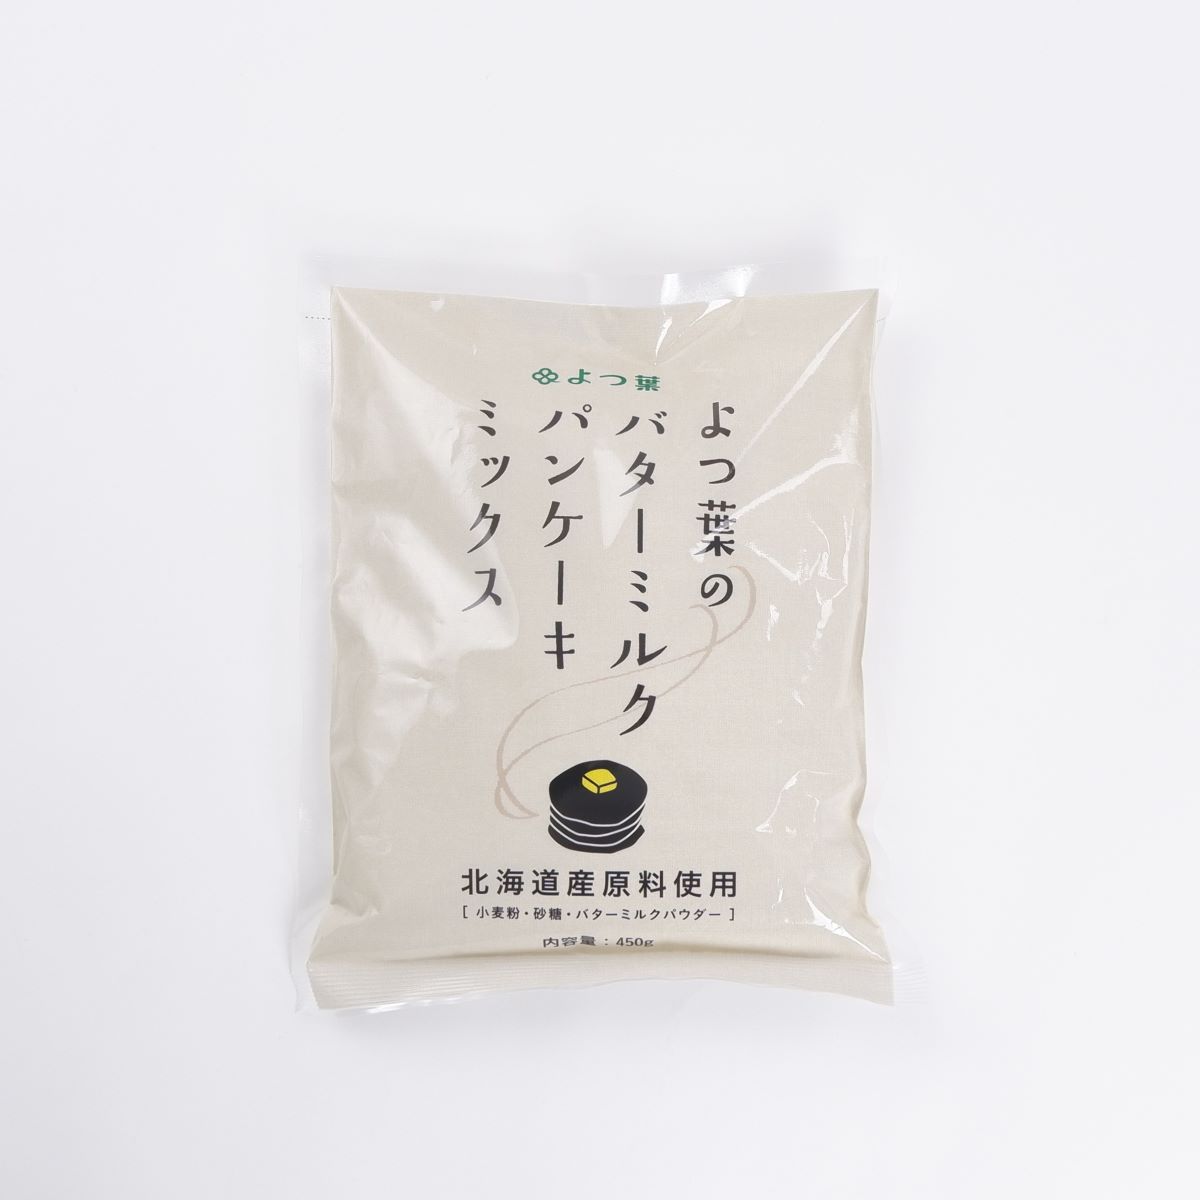 四葉的北海道酪乳鬆餅混合粉 北海道 特產 日本必買 | 日本樂天熱銷